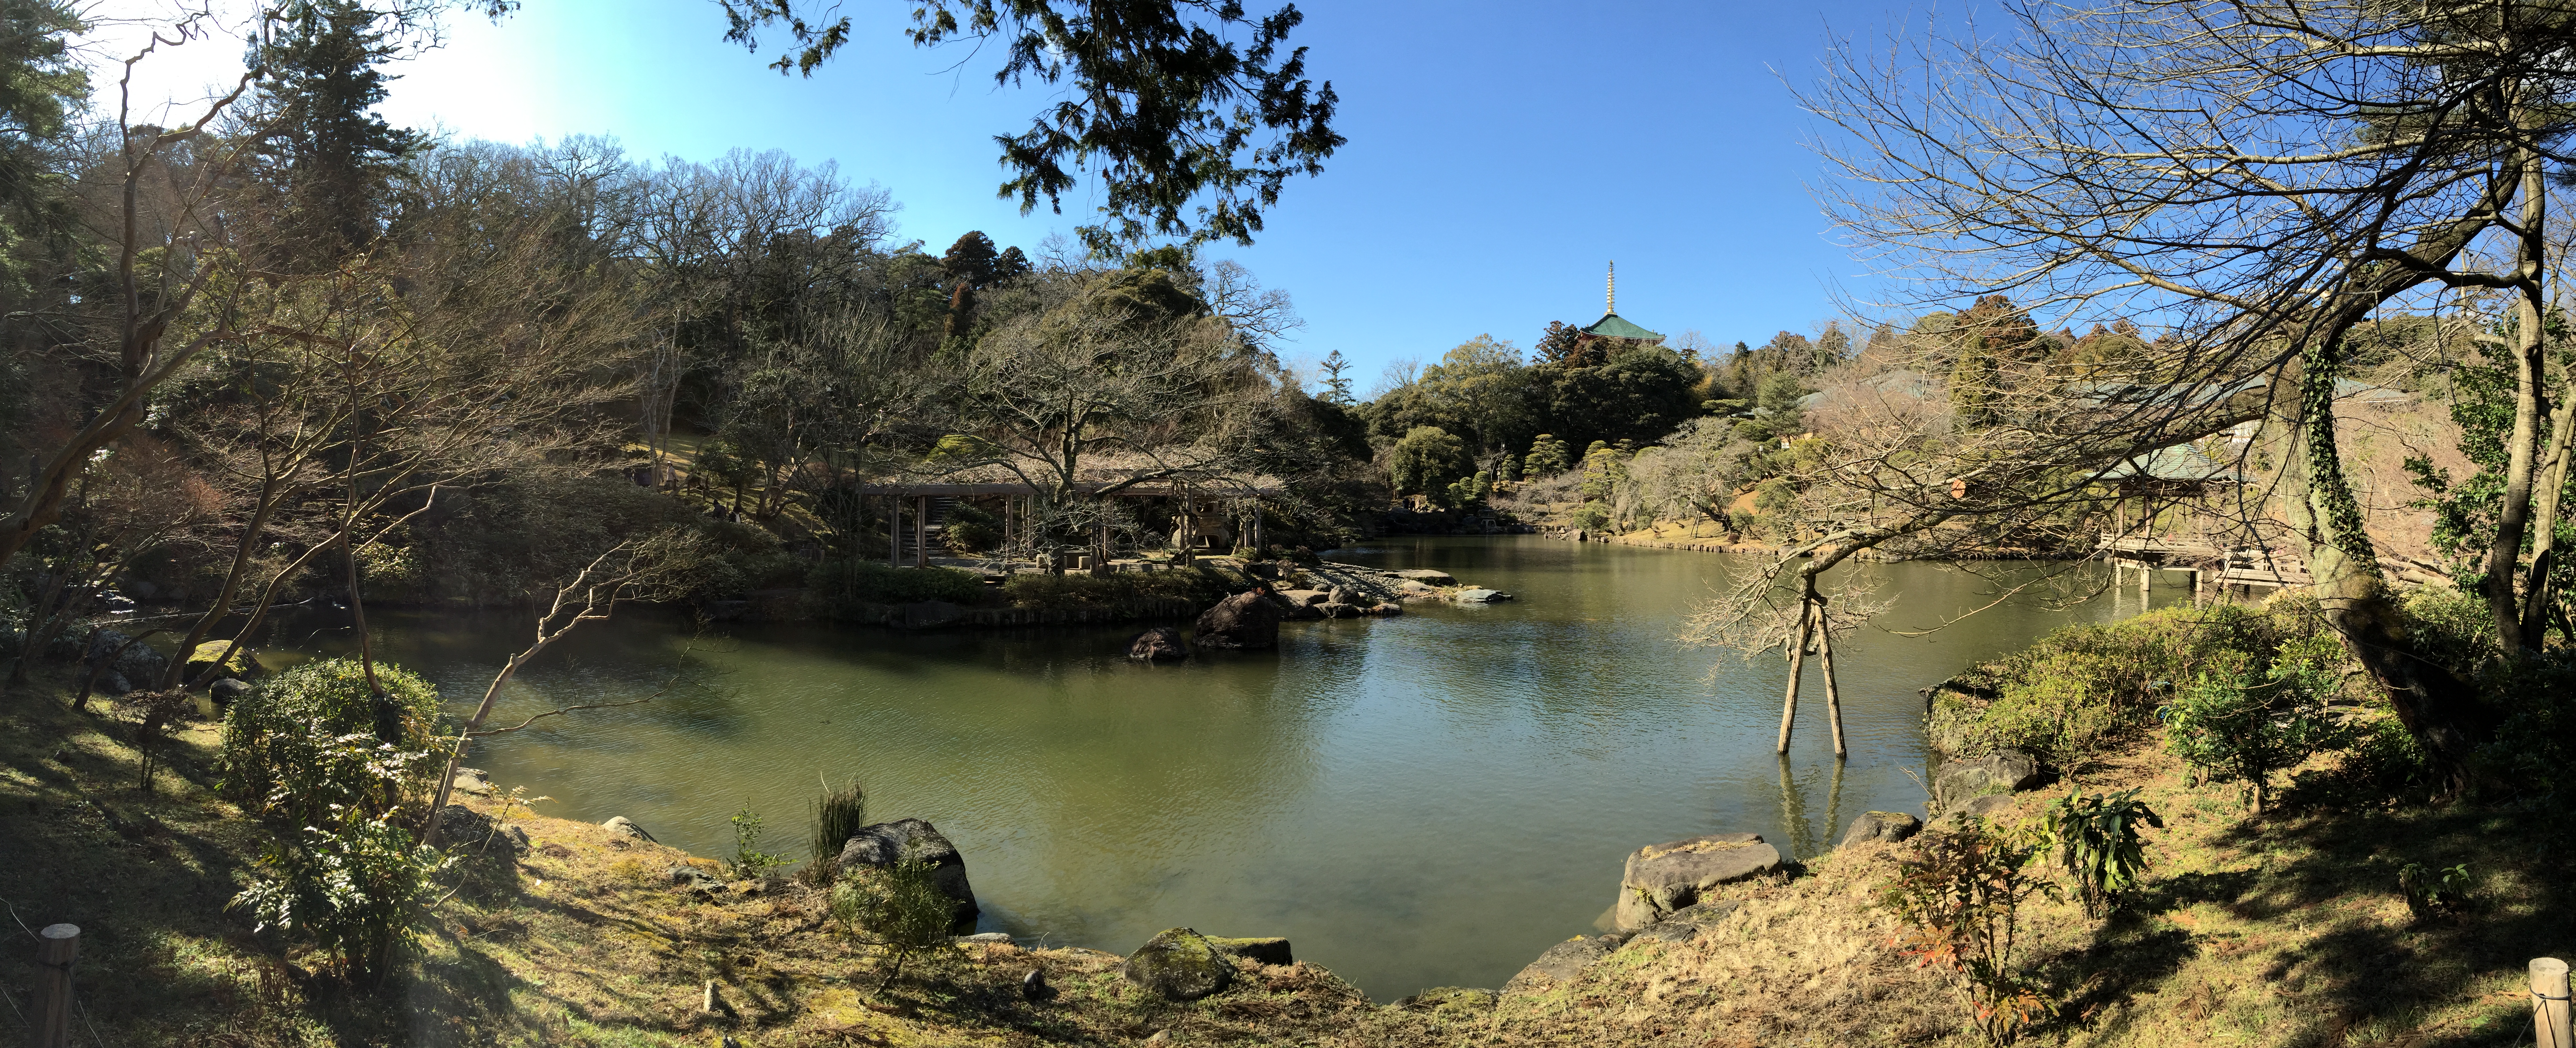 成田山公園